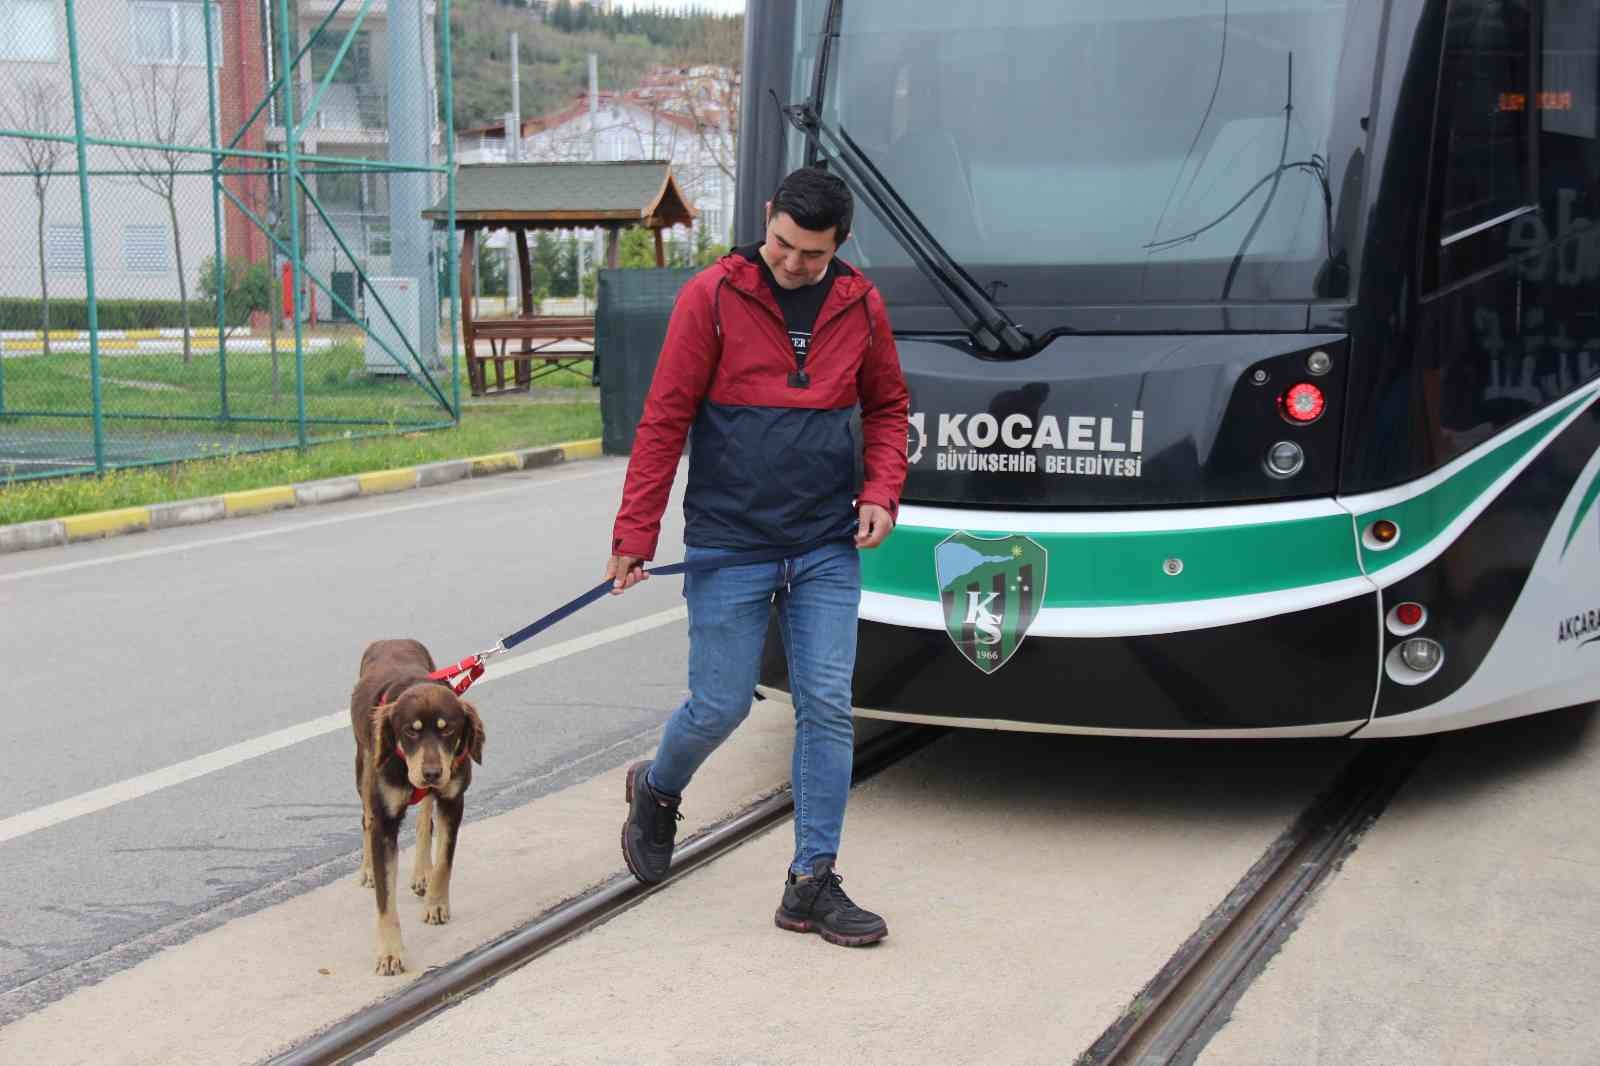 Kocaeli’de kaçak olarak bindiği tramvayda şehri gezen, yolcuların maskotu olan köpeğe Ulaşım Park personeli sahip çıktı. Artık belediyenin ...